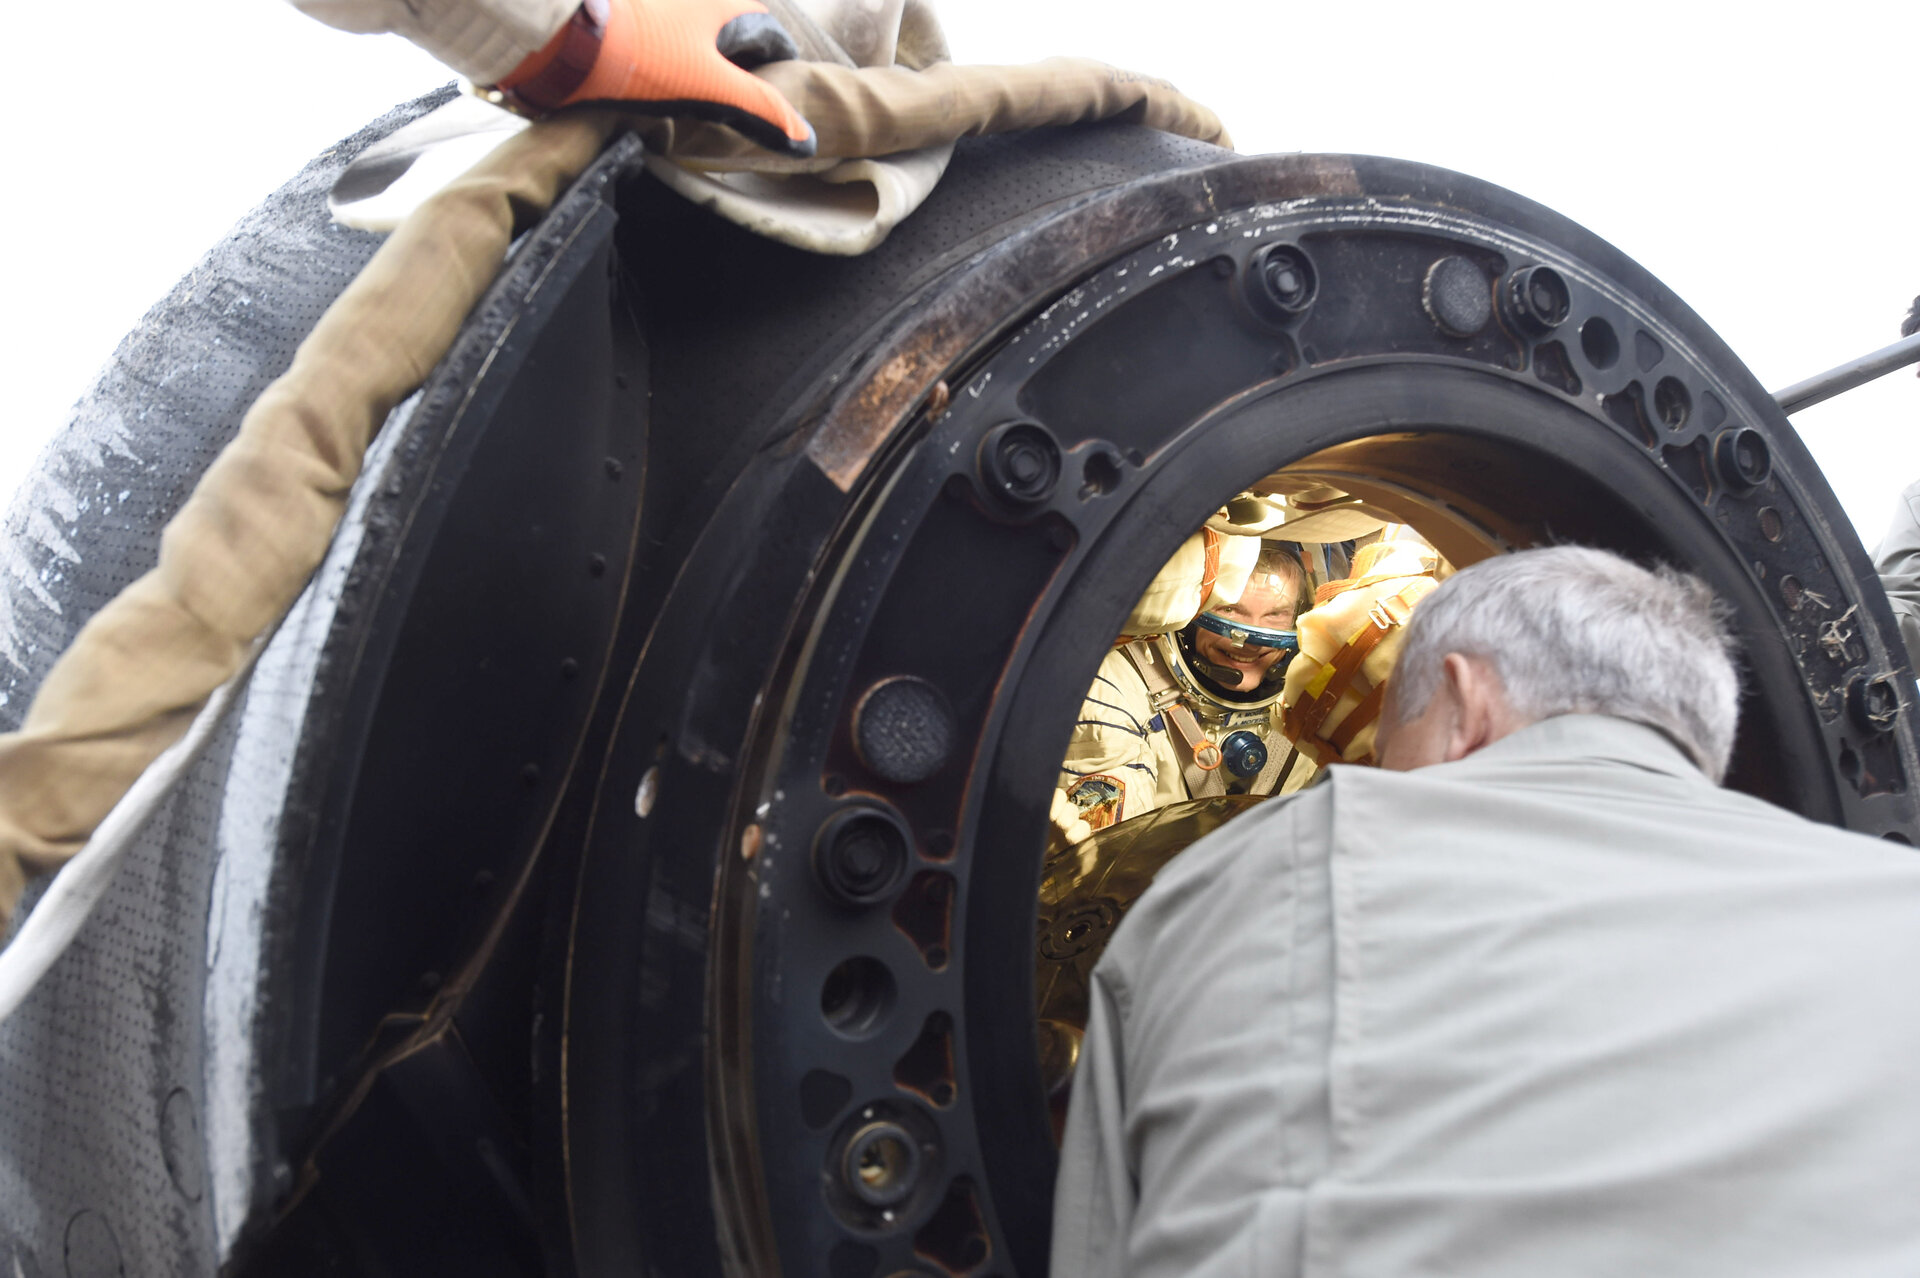 Opening the Soyuz capsule